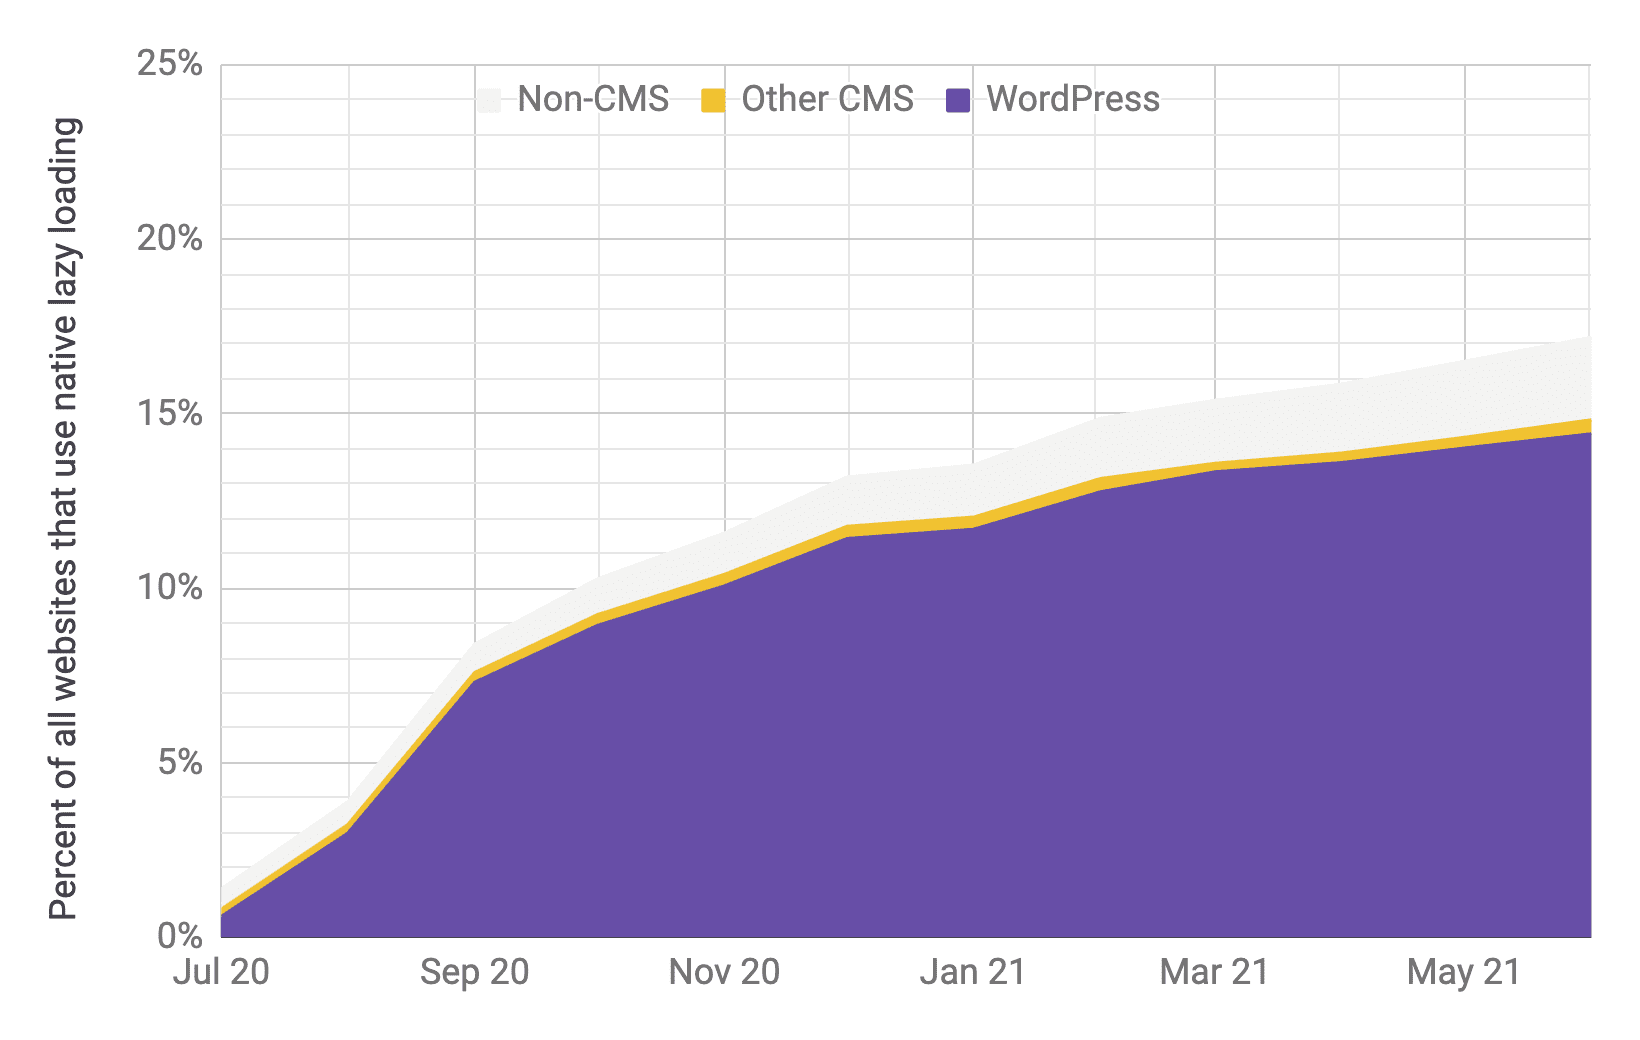 Wykres z seriami czasowymi przedstawiający wdrożenie leniwego ładowania, w którym dominuje WordPress w porównaniu z innymi CMS i innymi systemami, w stosunku do poprzedniego wykresu. Wykazuje się, że w okresie od lipca do czerwca 2021 r. całkowite rozpowszechnienie wzrasta z 1% do 17%.